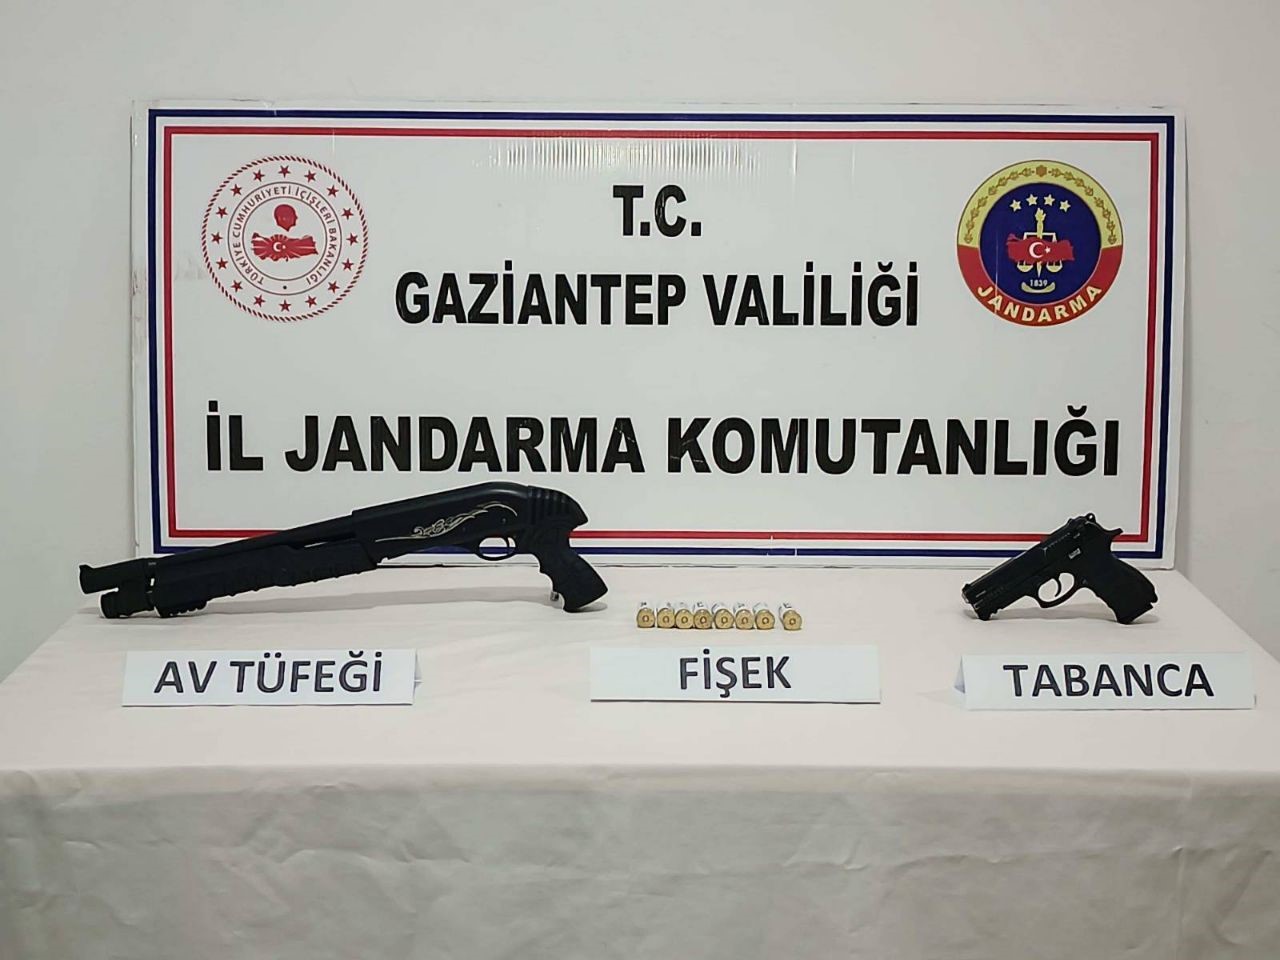 Gaziantep’te 23 adet kaçak silah ele geçirildi
